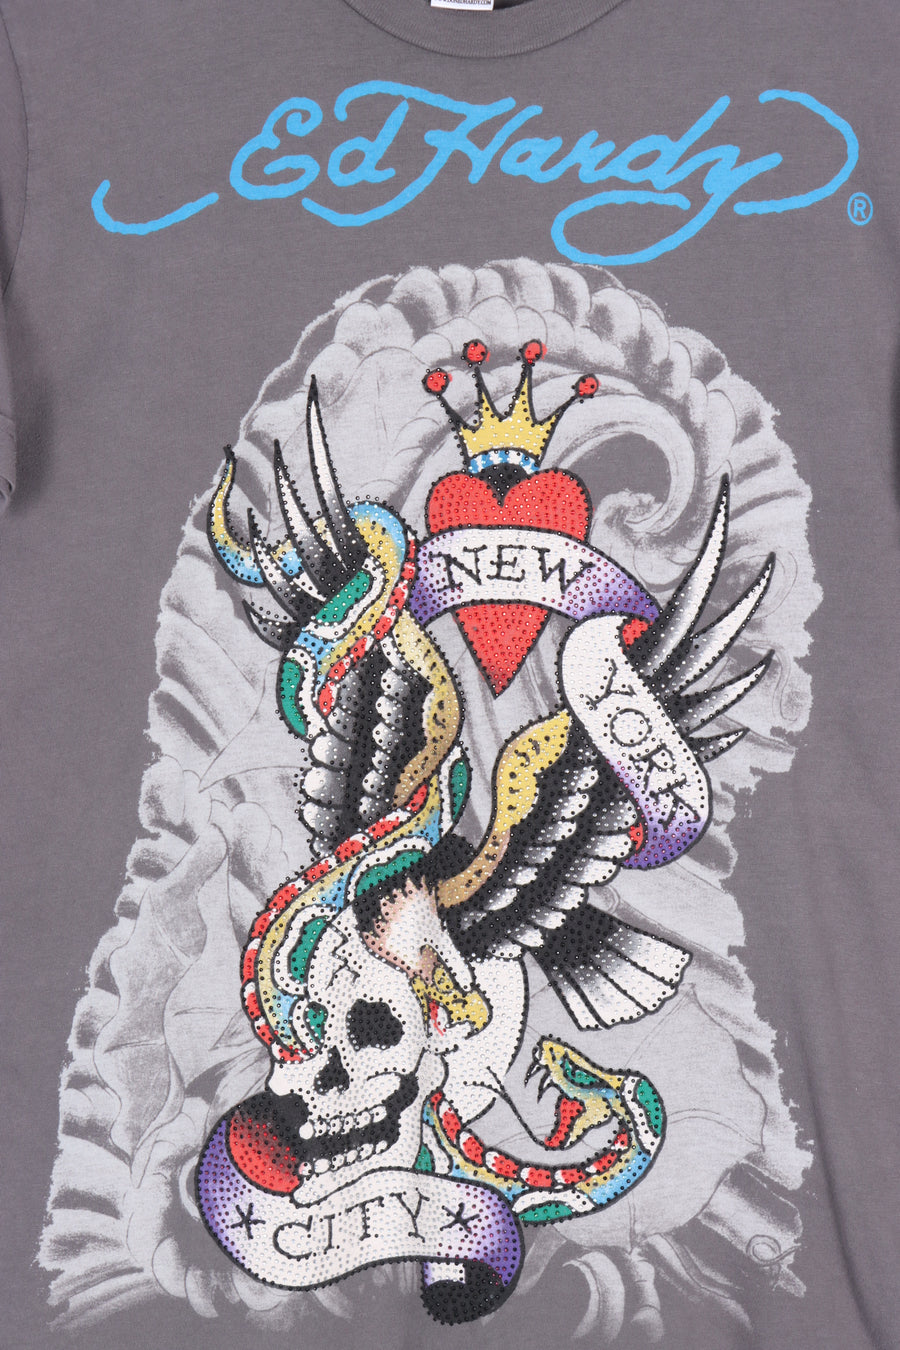 ED HARDY Skull Eagle & Snake Embellished T-Shirt USA Made (S-M)